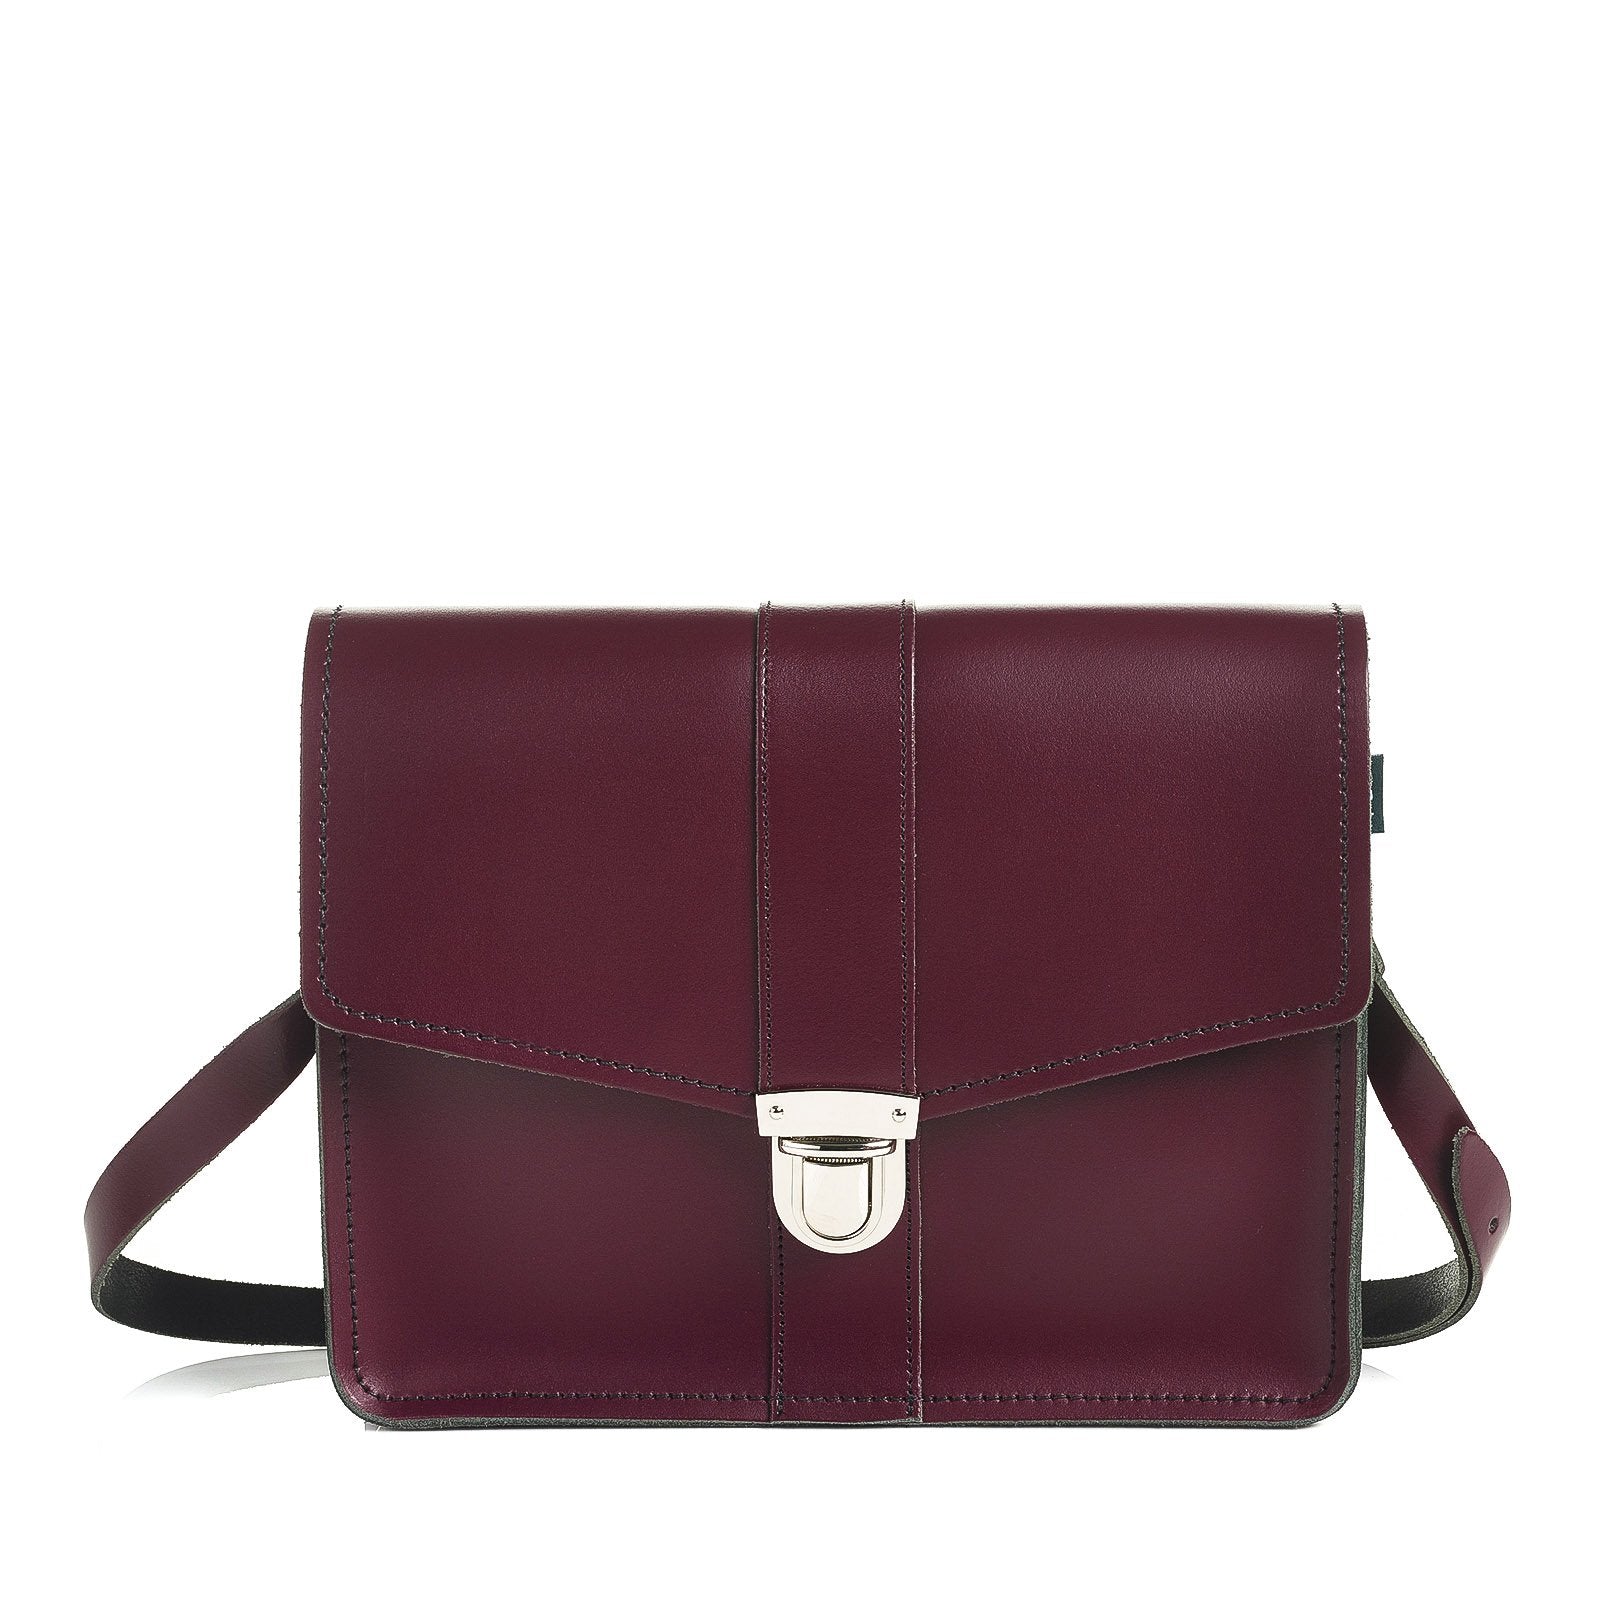 Leather Shoulder Bag - Marsala Red